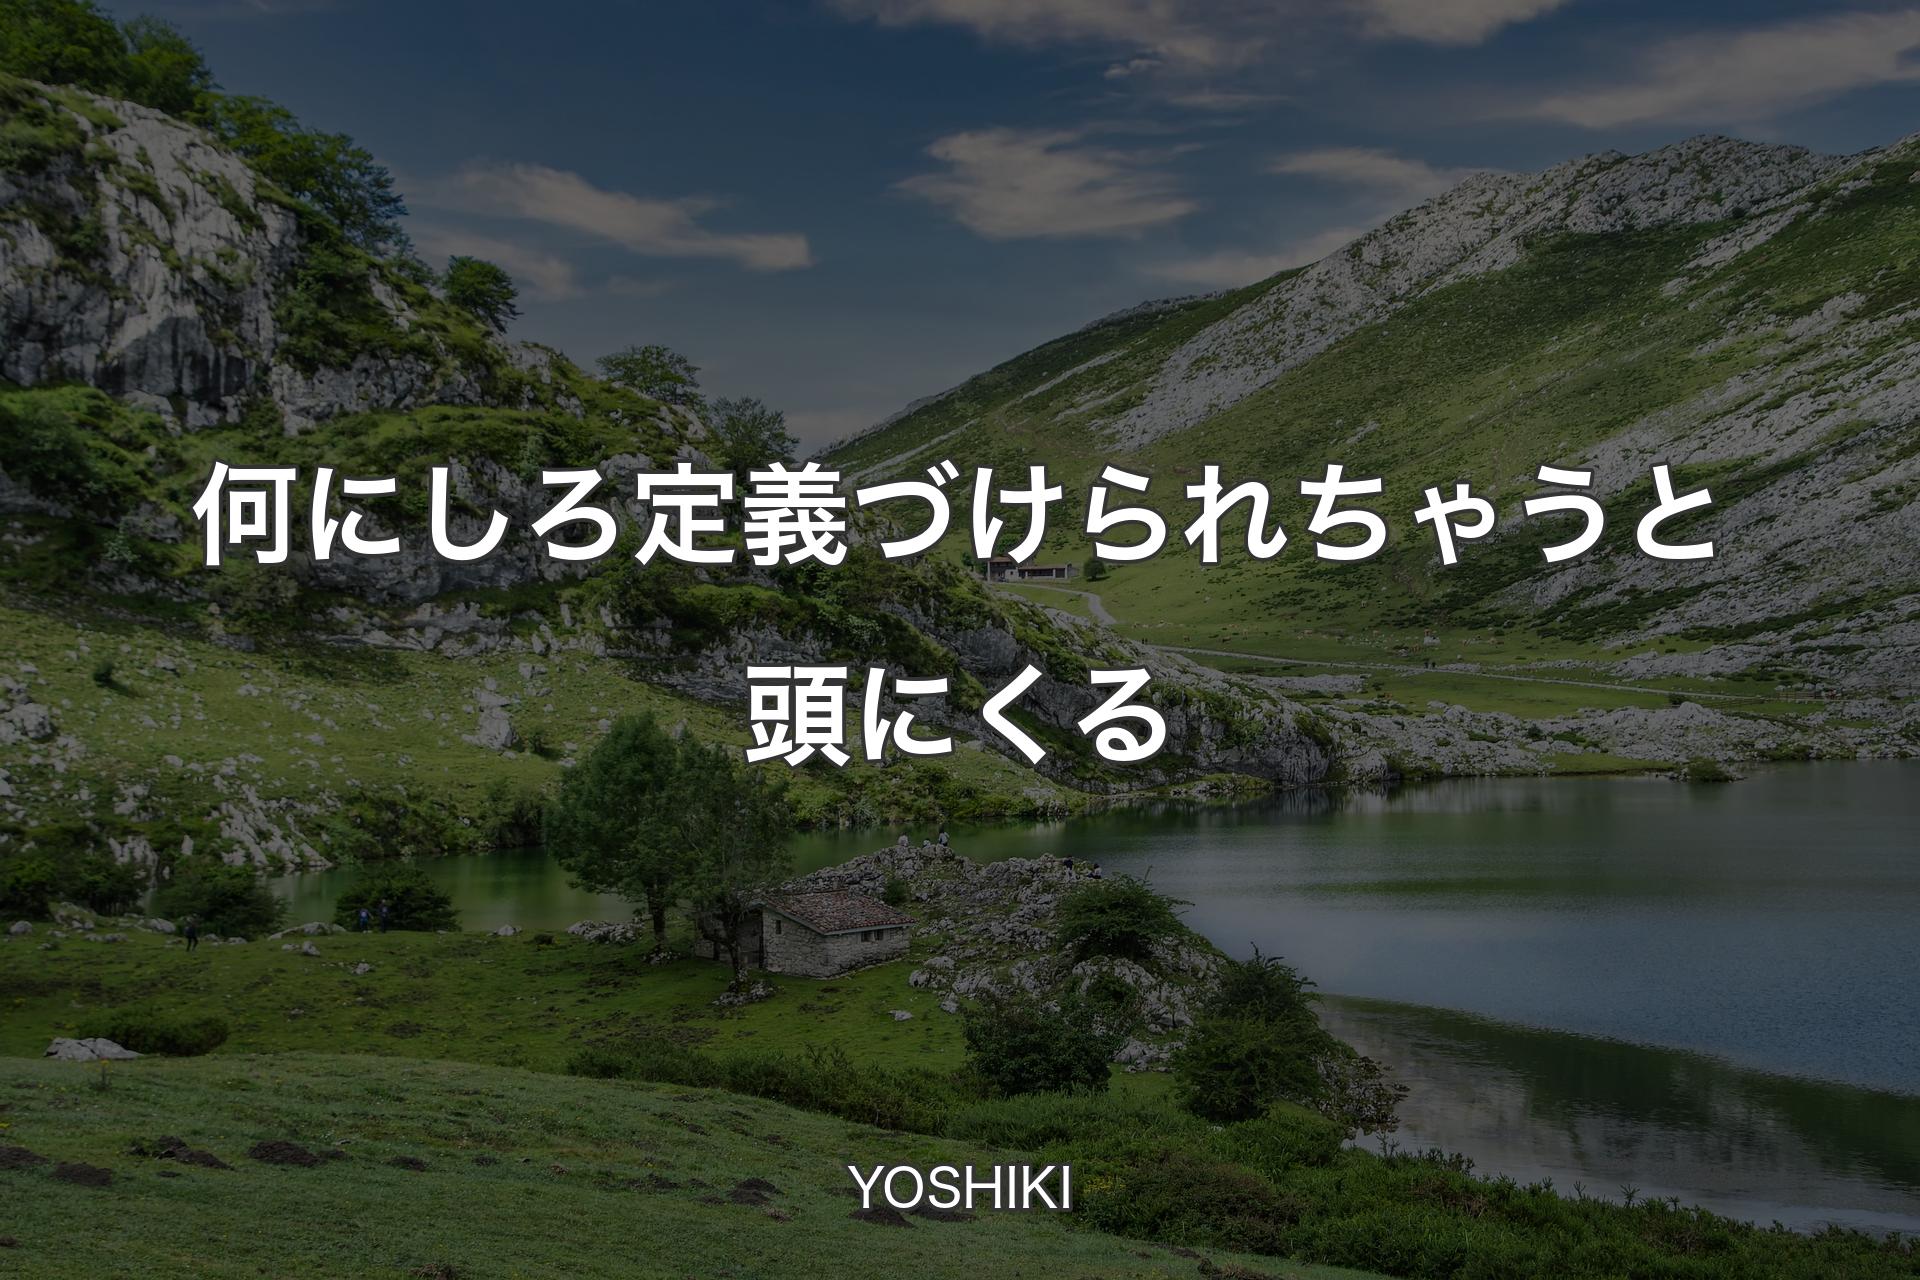 【背景1】何にしろ定義づけられちゃうと頭にくる - YOSHIKI